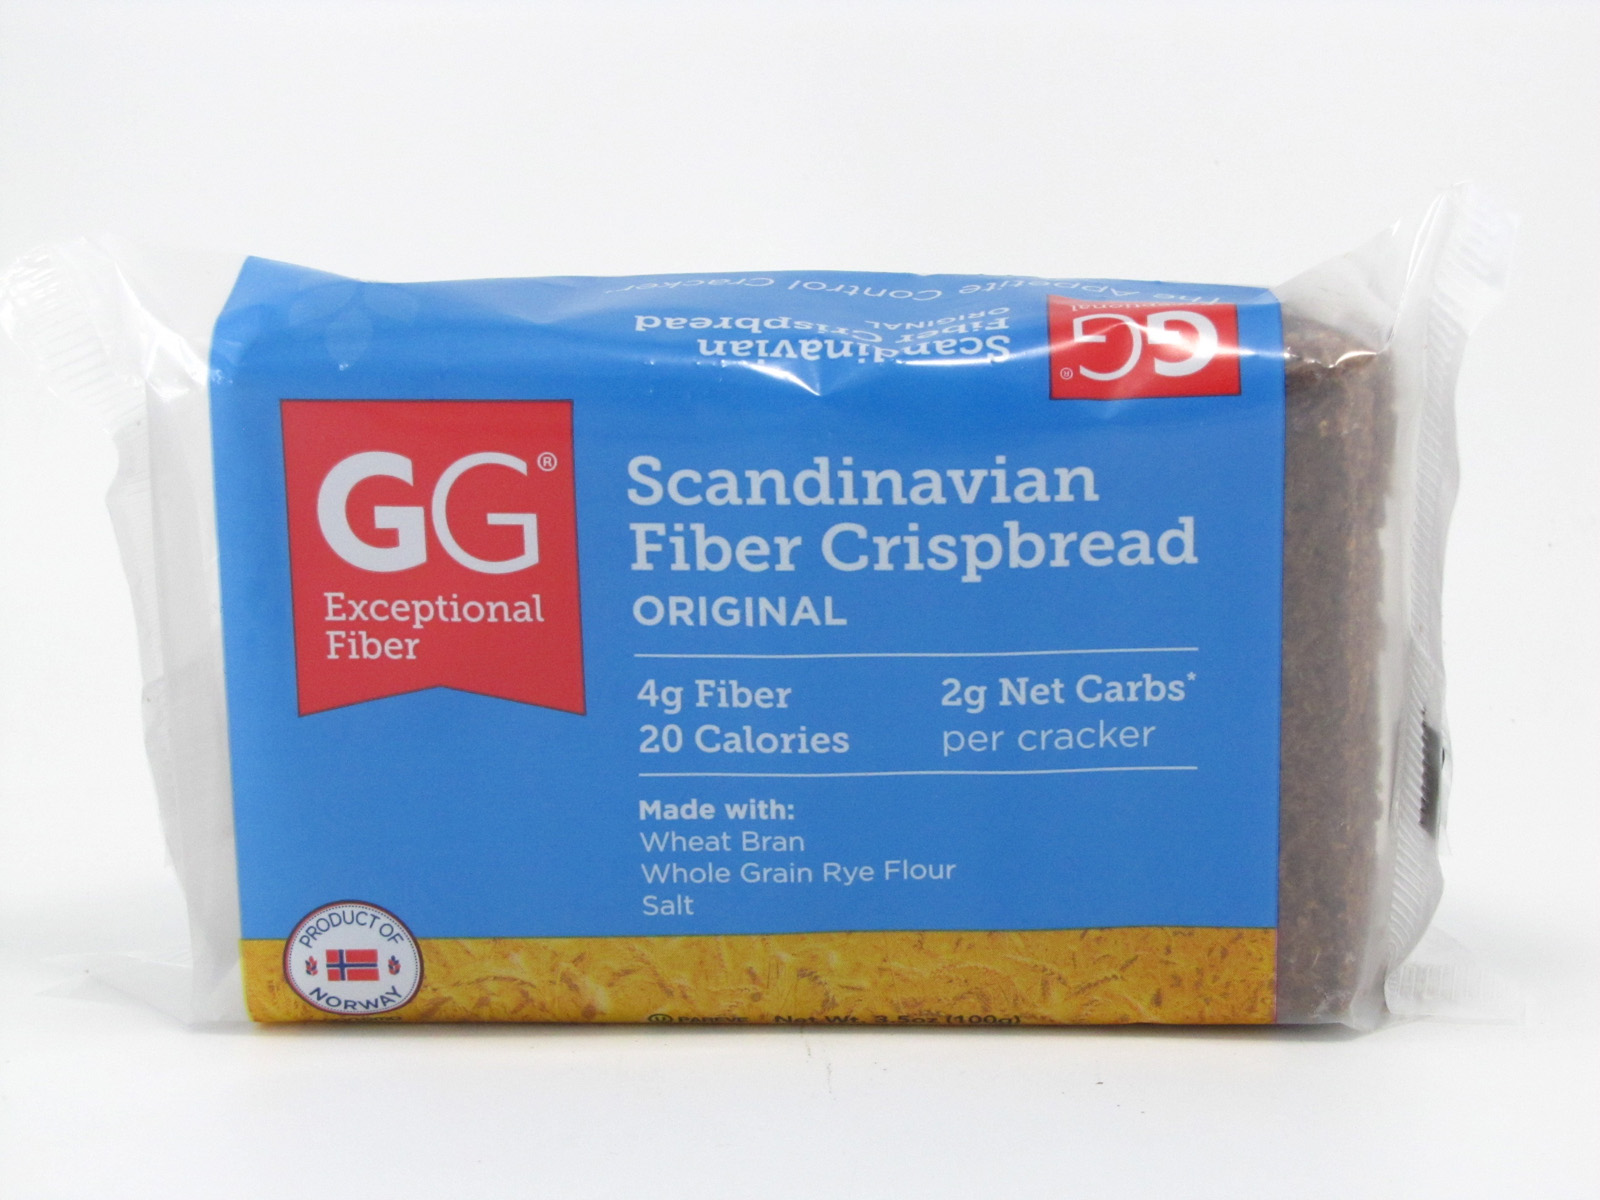 GG Scandinavian Fiber Crispbread - Original - front view